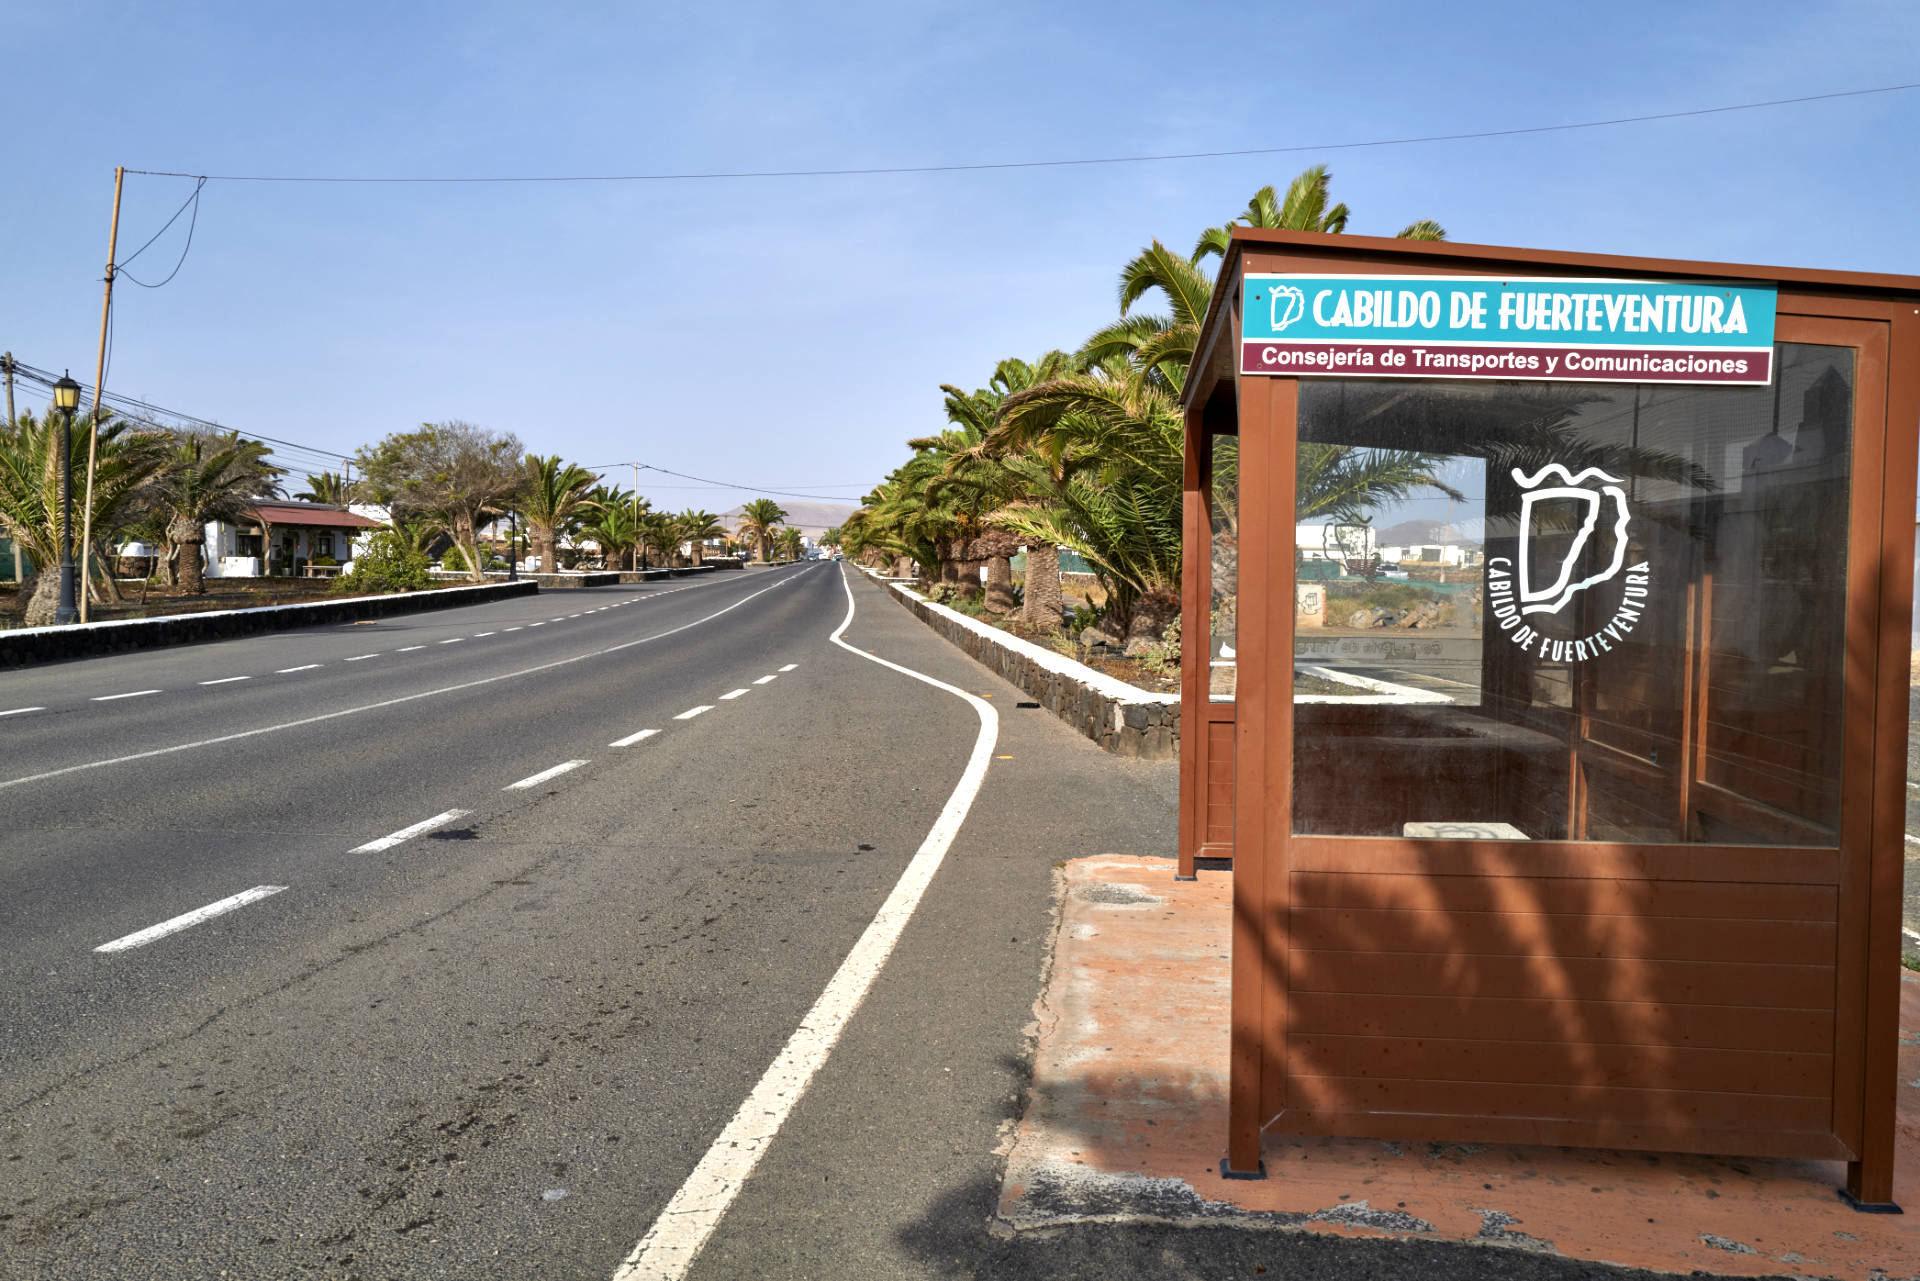 Parada – Bussation – in der Gemeinde La Oliva Fuerteventura.